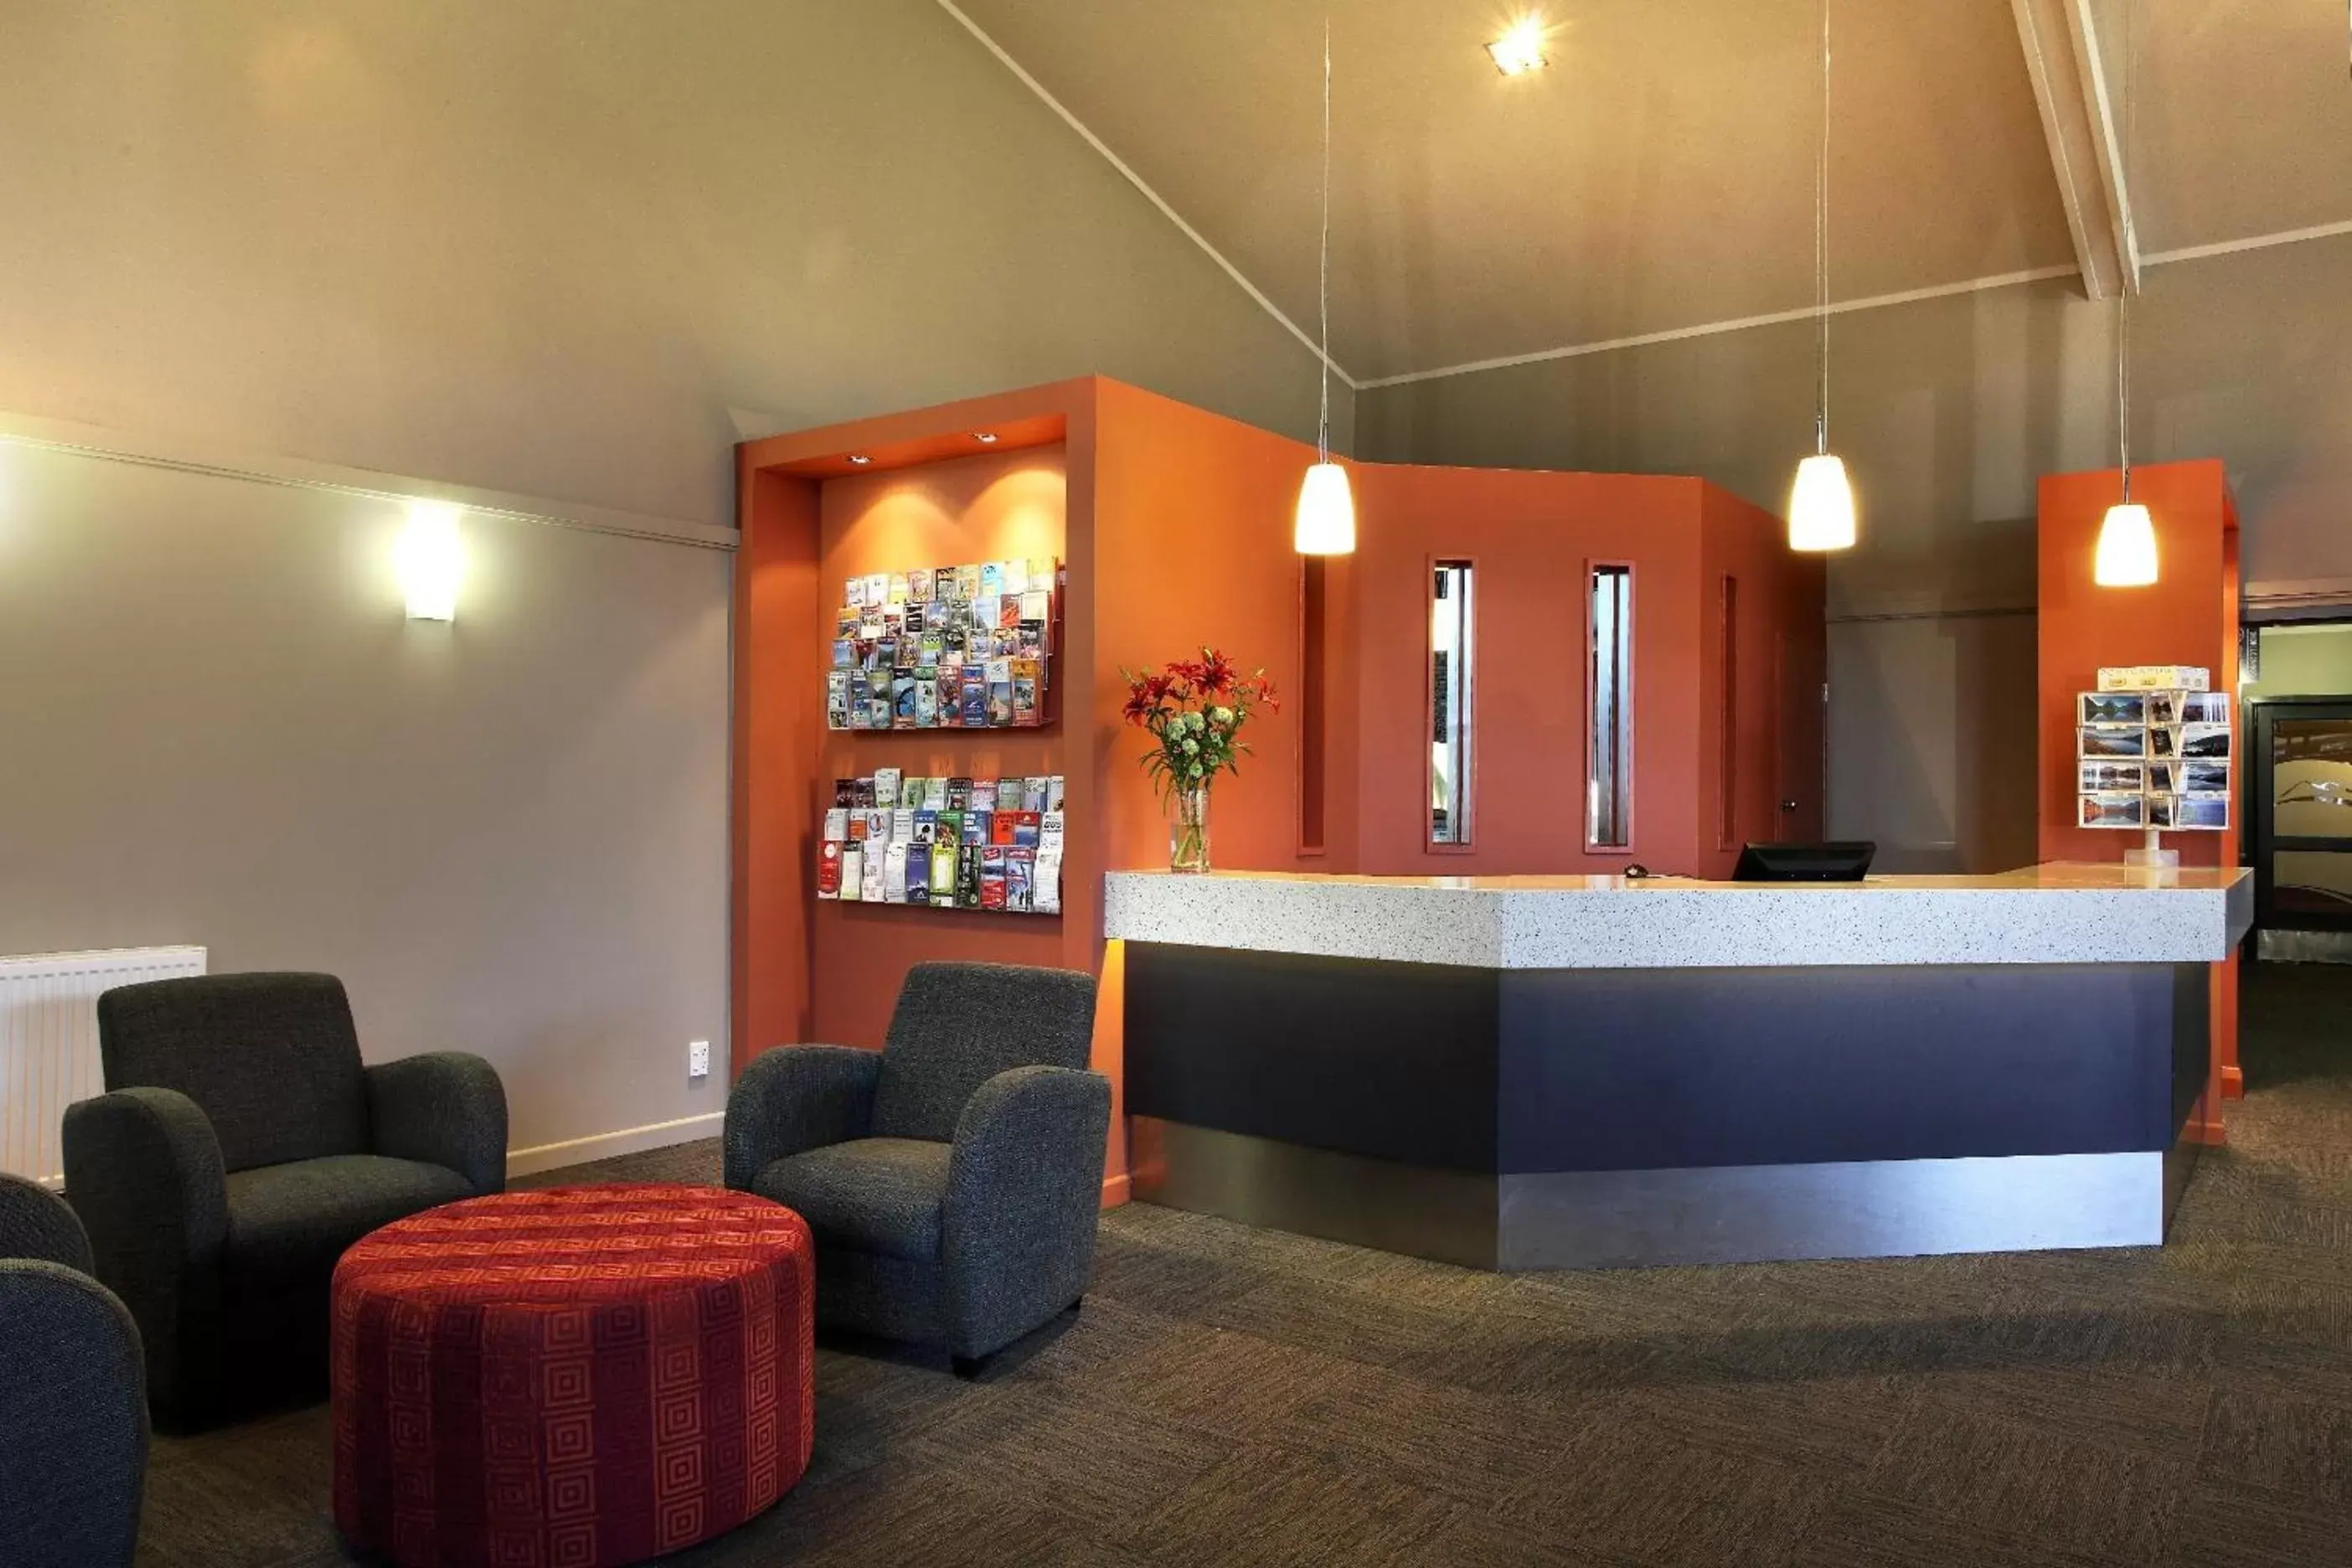 Lobby or reception, Lobby/Reception in Wanaka Hotel